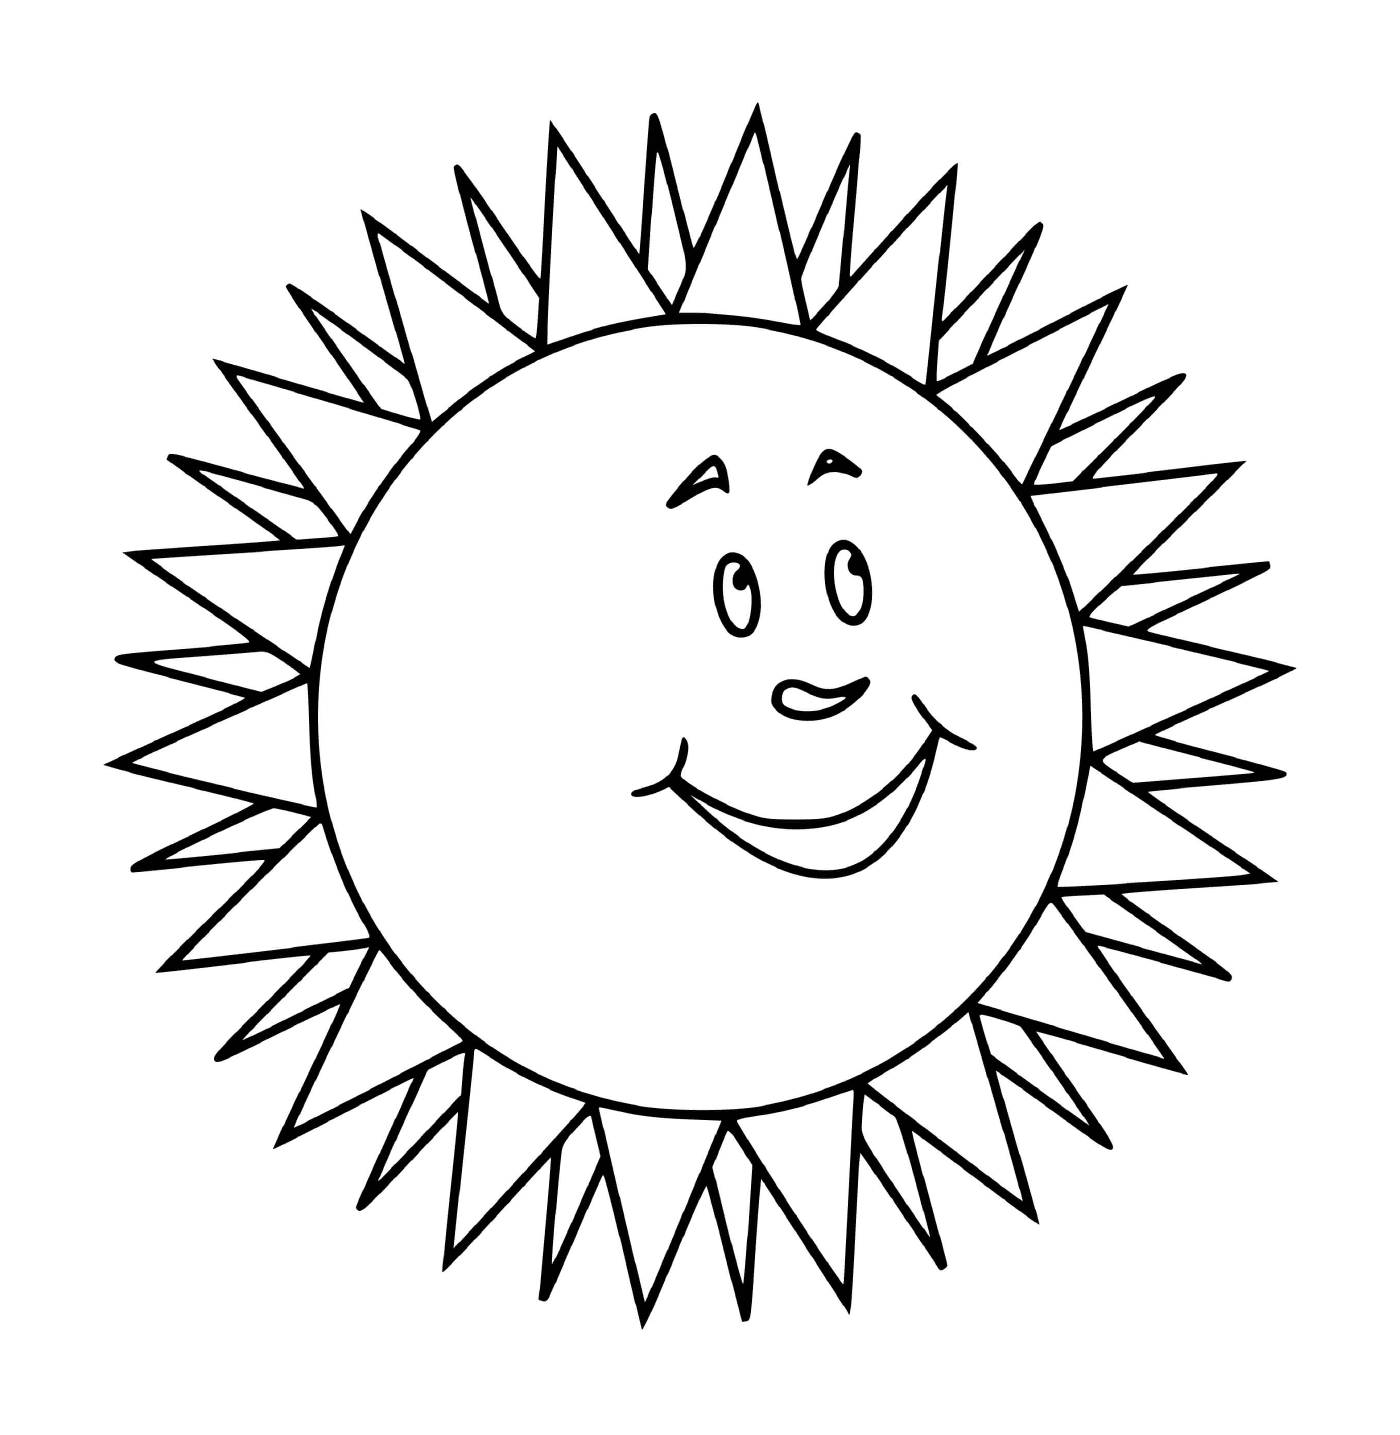  सूर्य को Rance के साथ मुस्कुराते हुए 